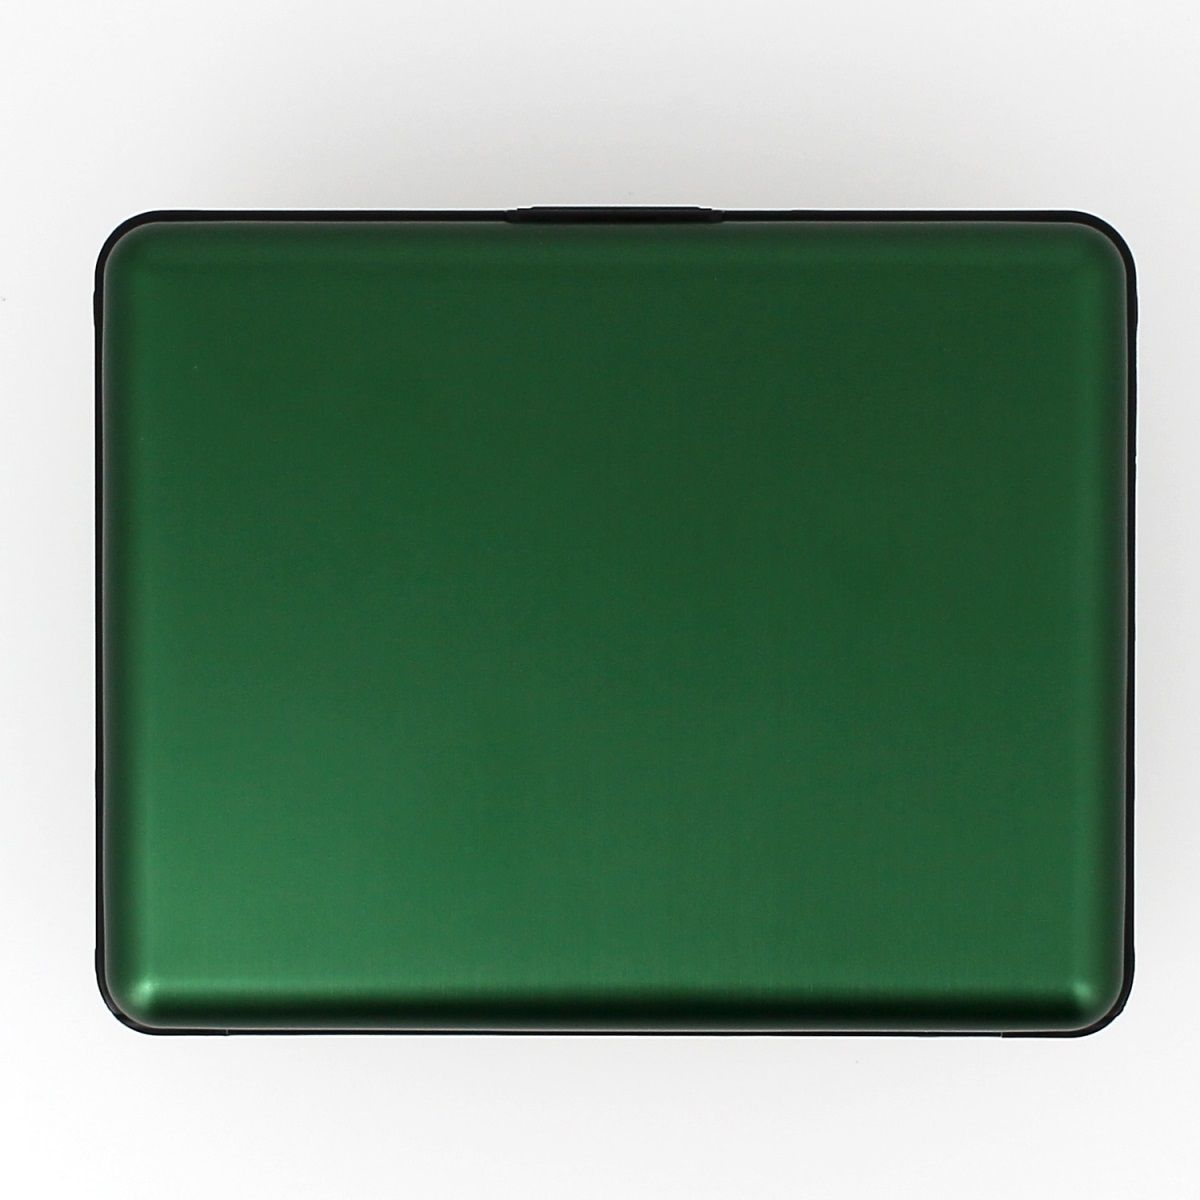 OGON Aluminum Wallet Big - Green